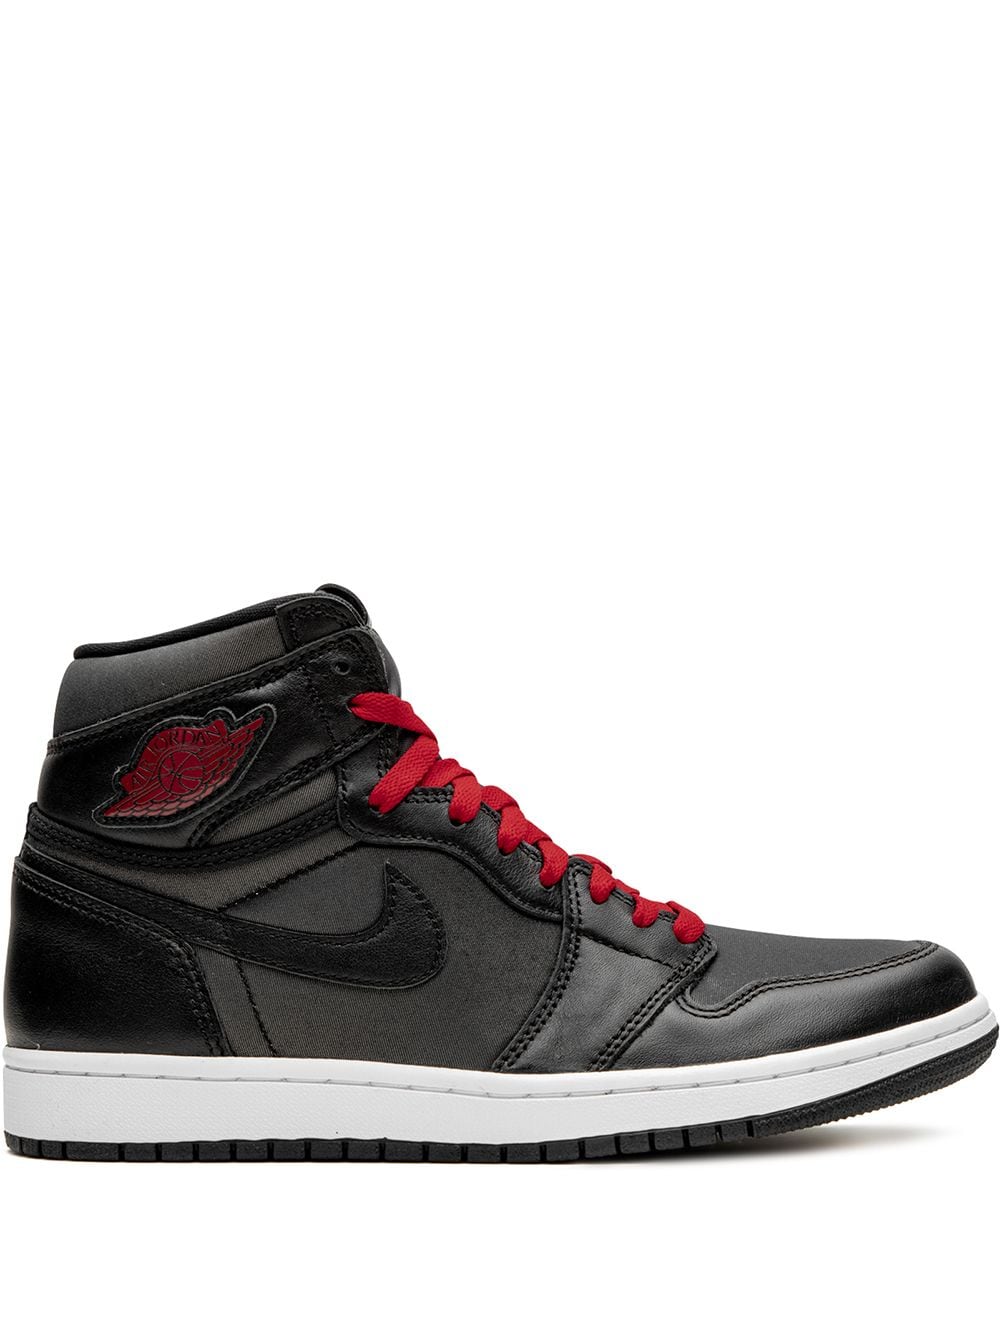 Jordan Air Jordan 1 Retro High OG "Black Satin/Gym Red" sneakers